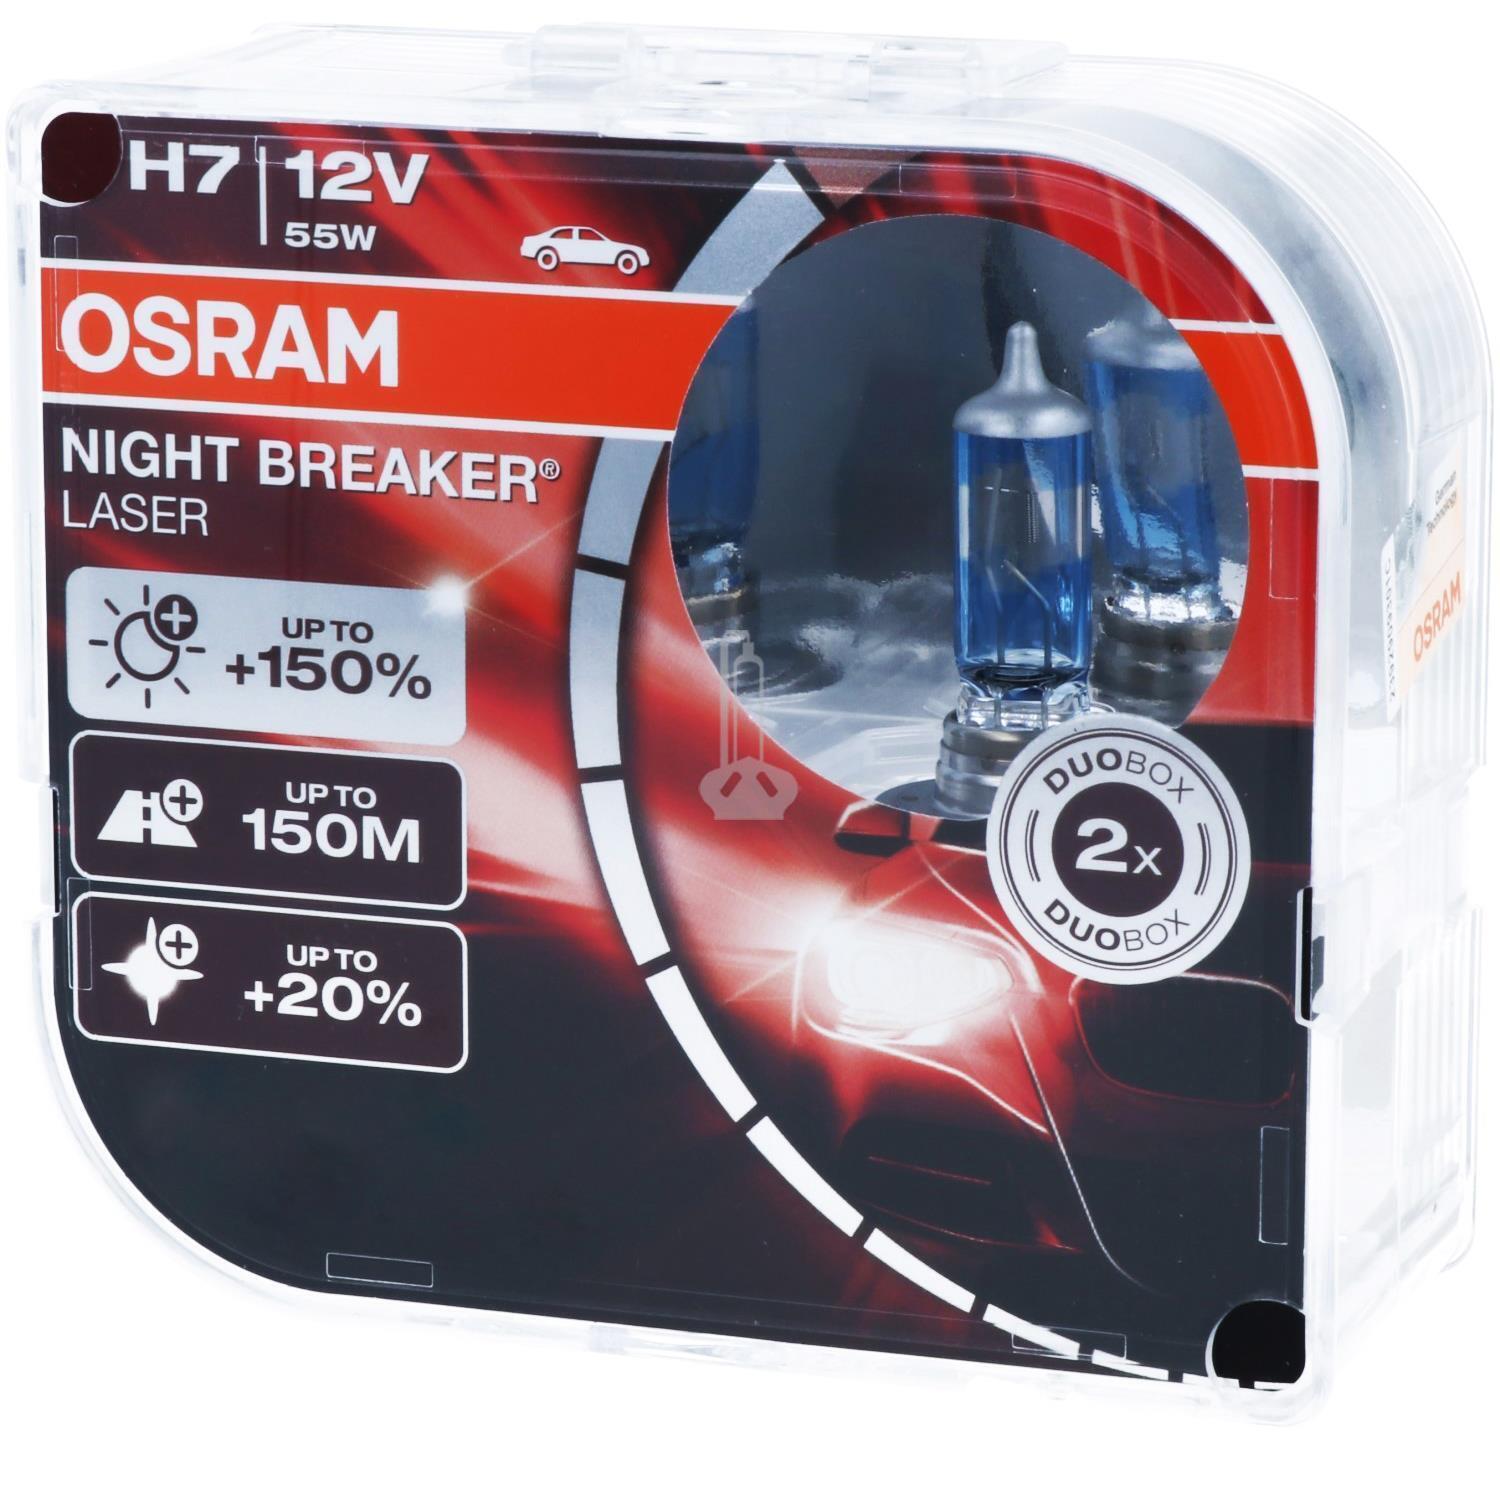 2er Pack OSRAM PX26d NIGHT BREAKER LASER H7 als Abblendlicht/Fernlicht  Halogenlicht